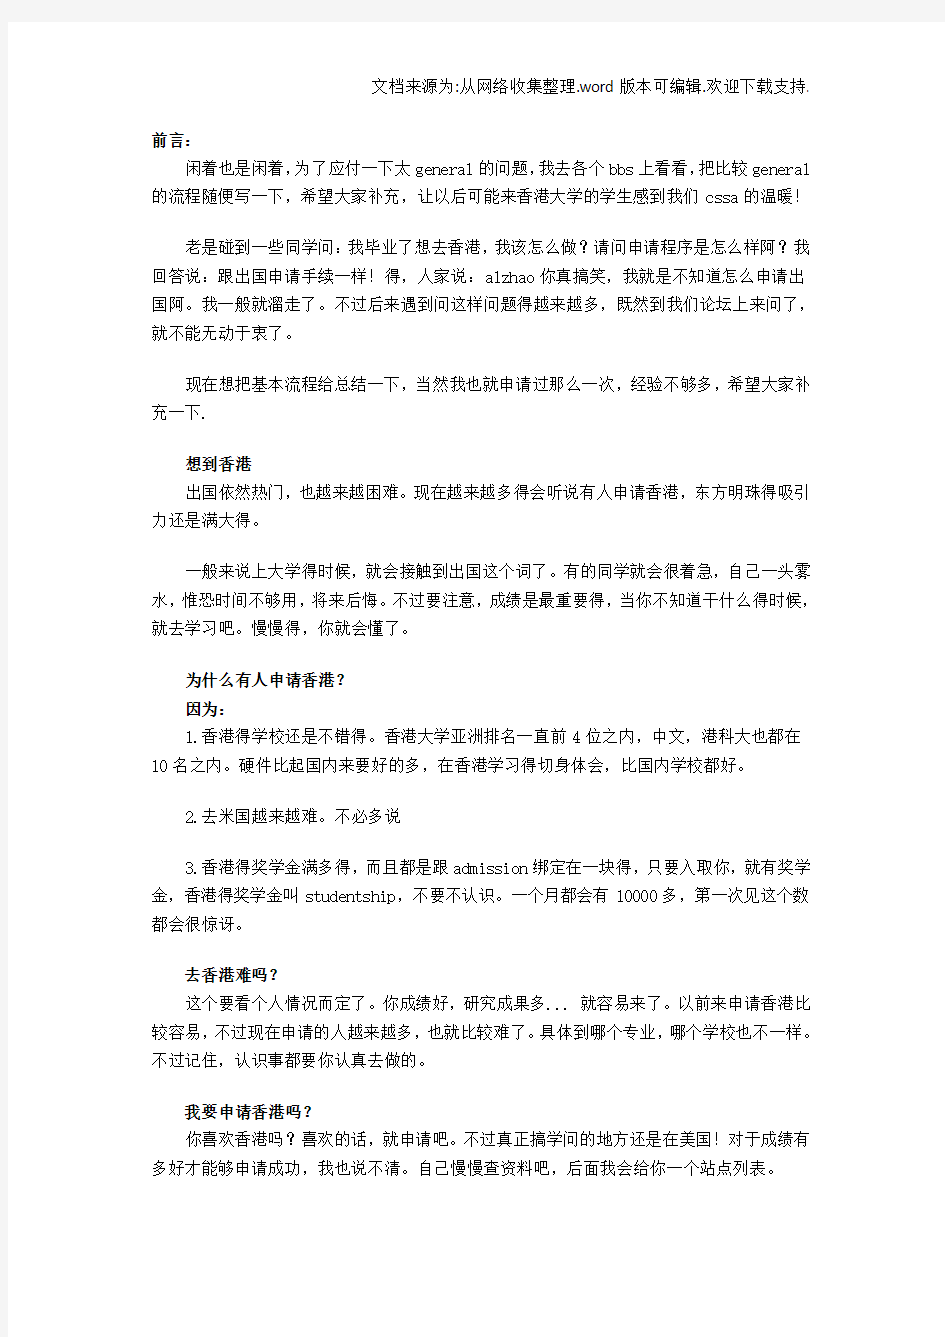 香港大学申请流程